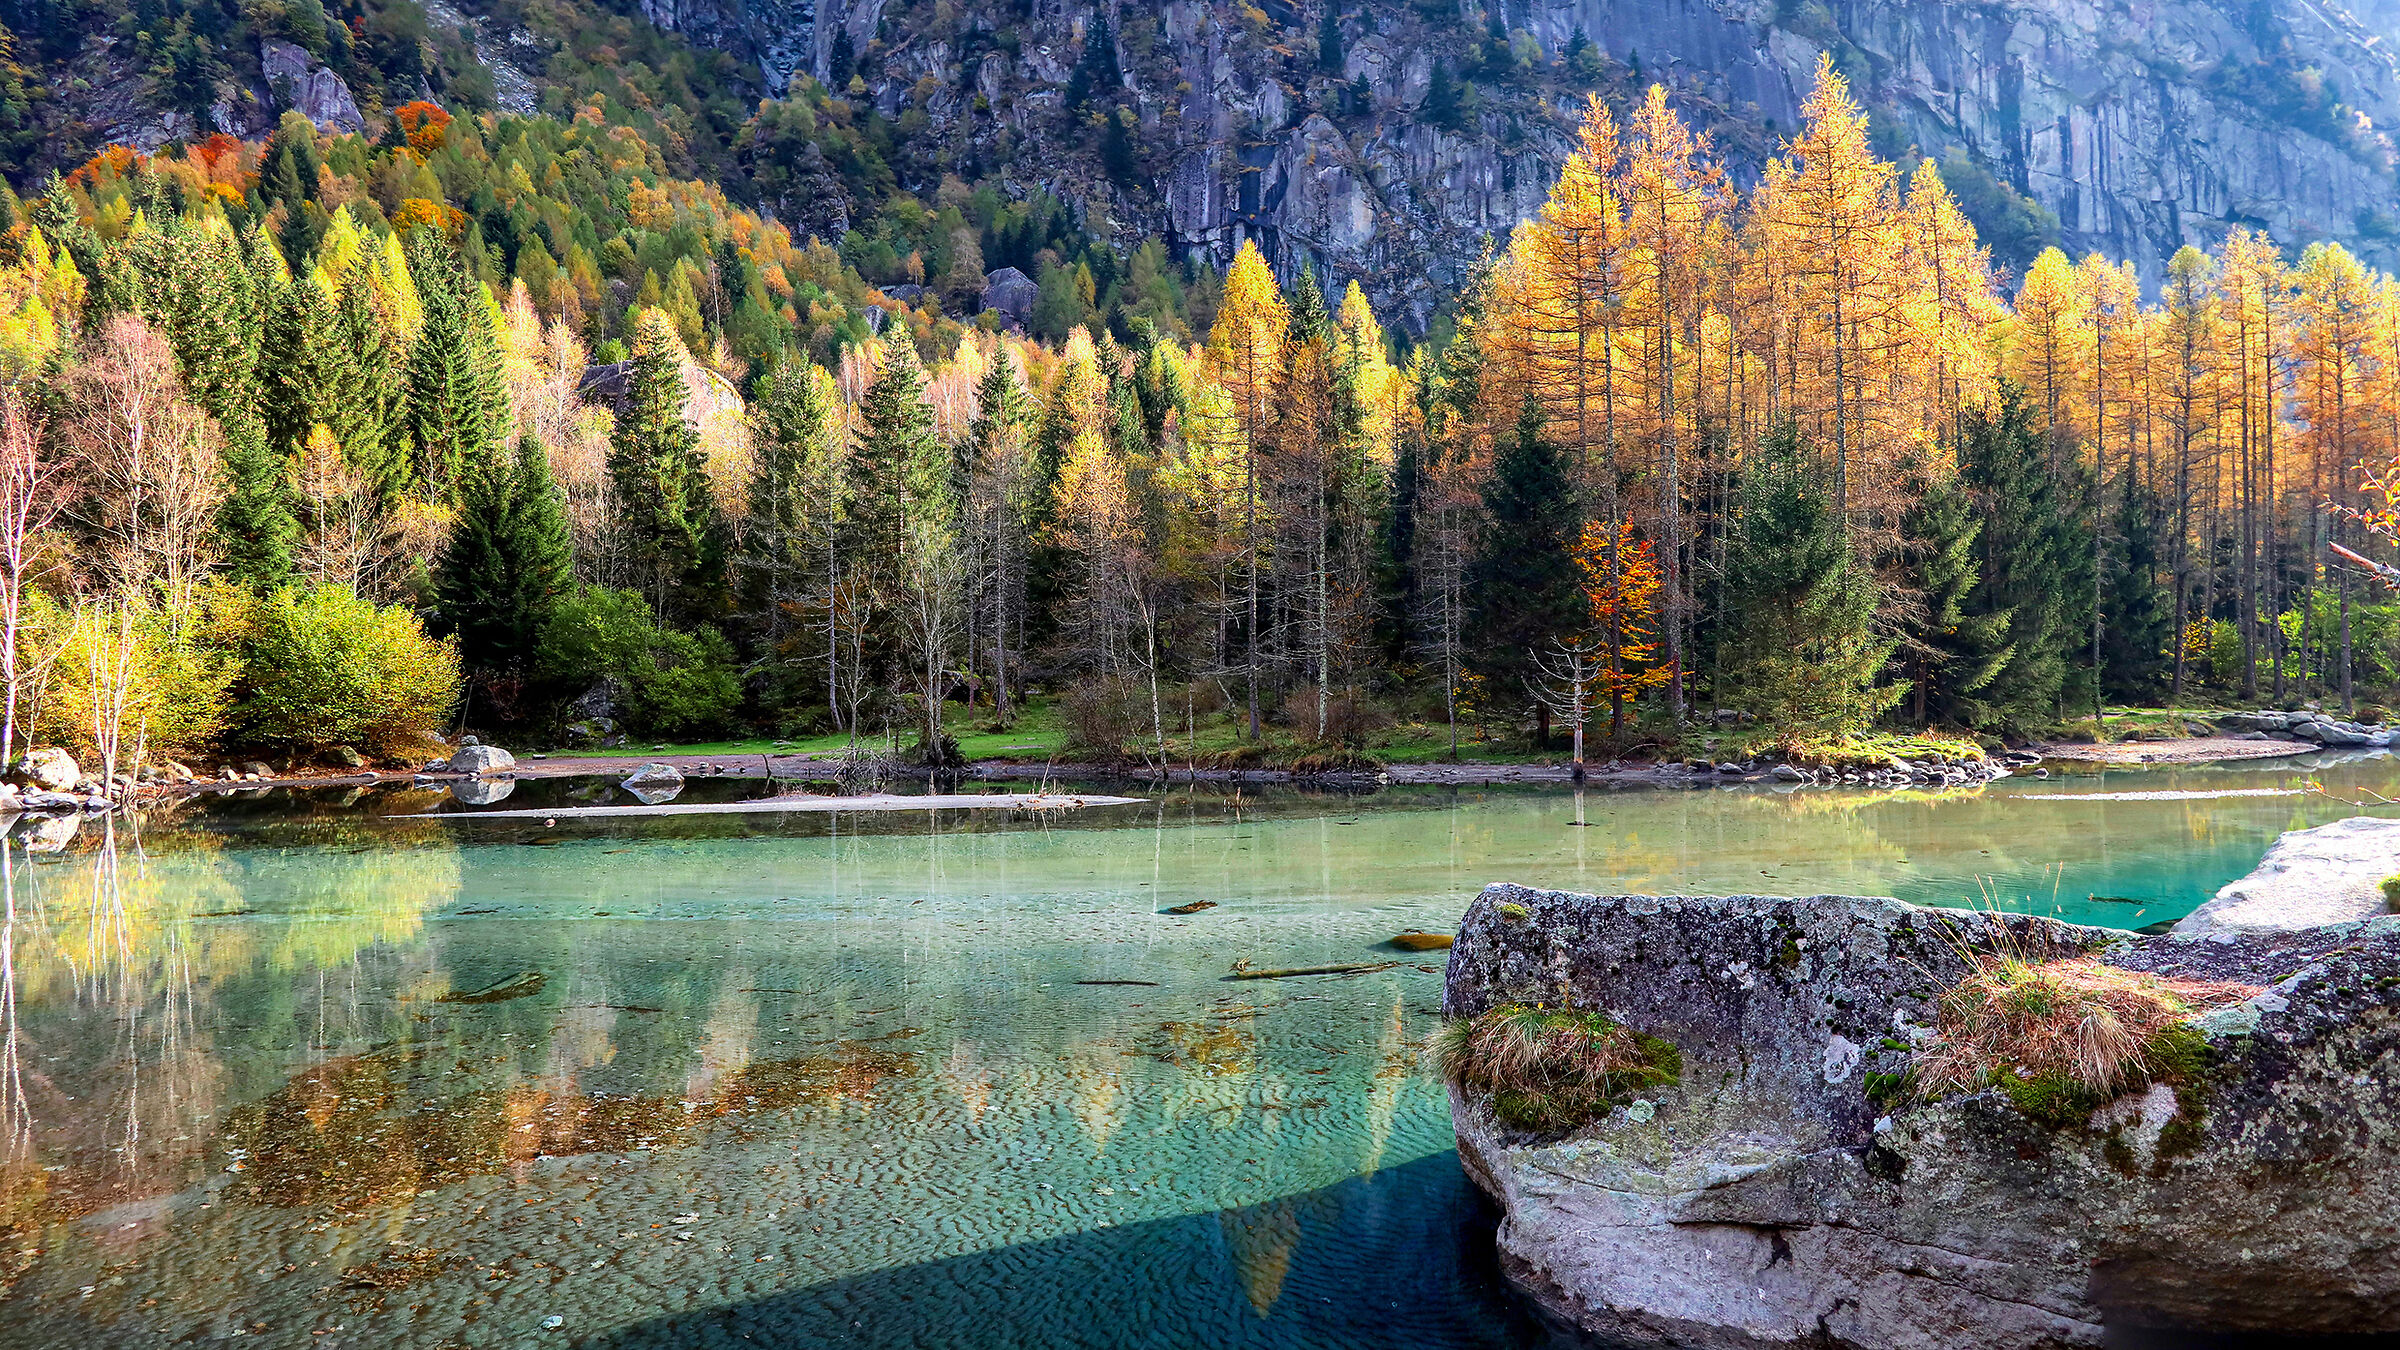 The pond of the Val di Mello...